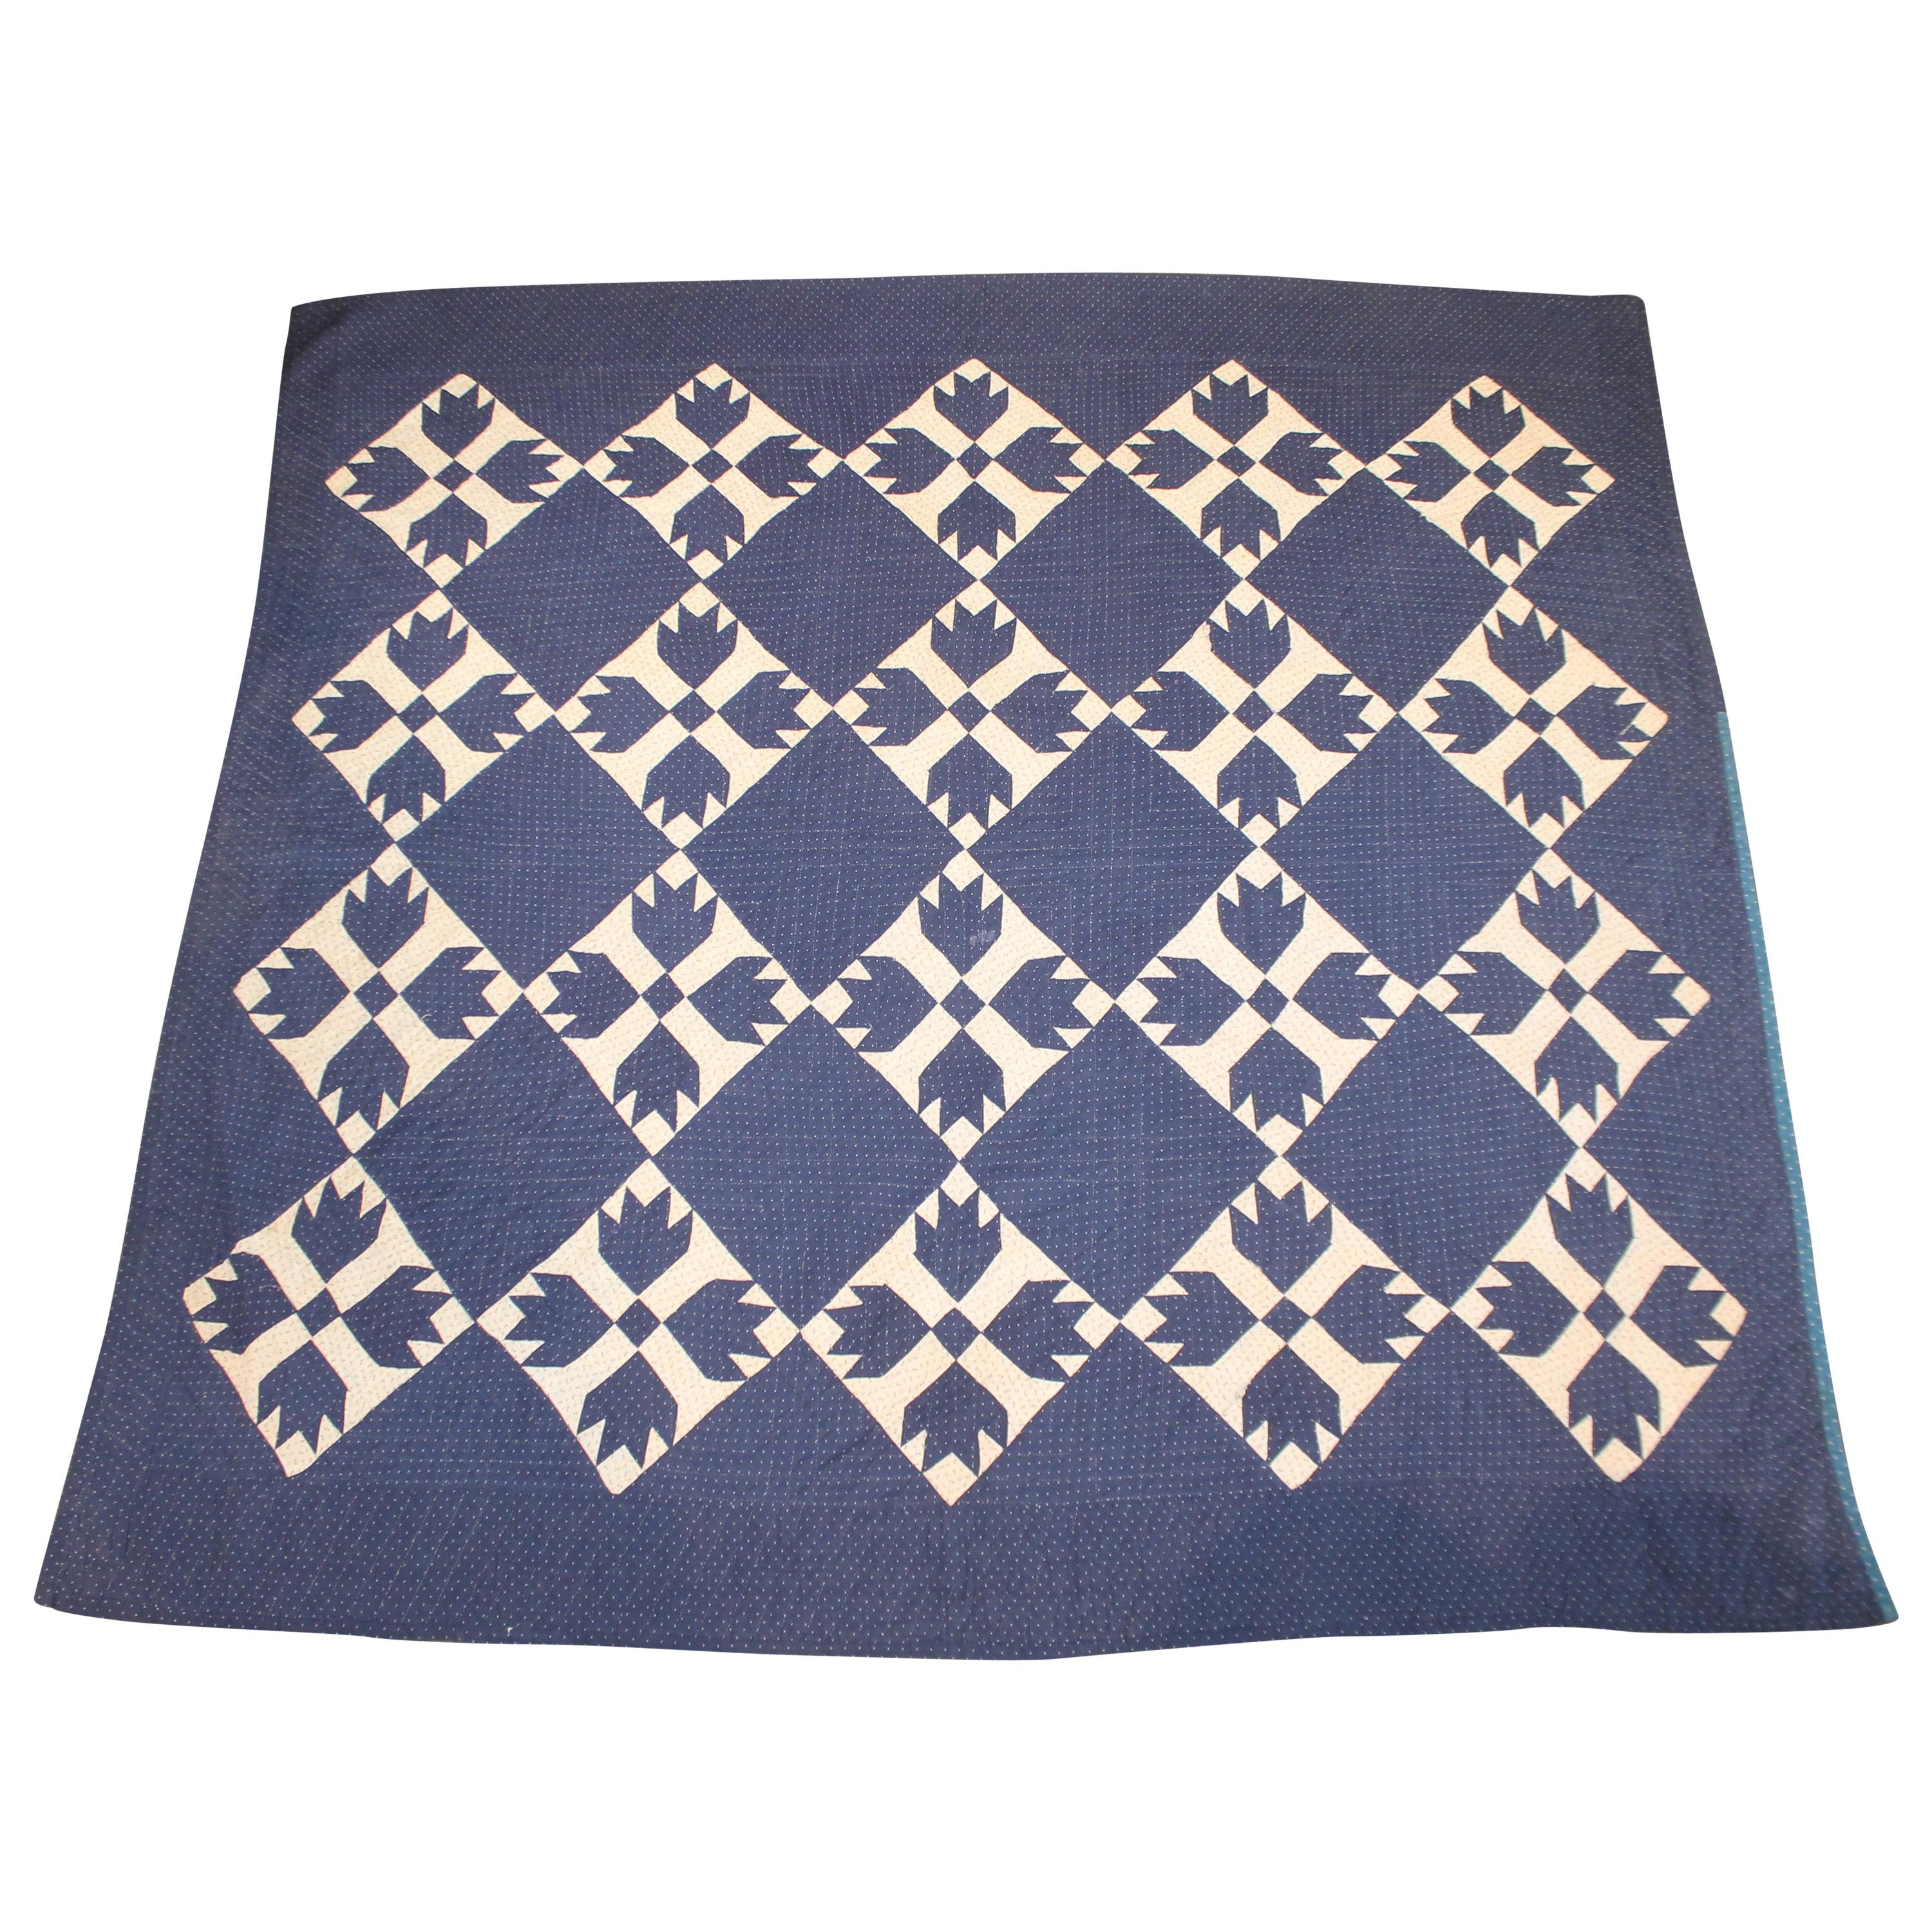 Antique Indigo Blue Quilt in Bear Paw Pattern